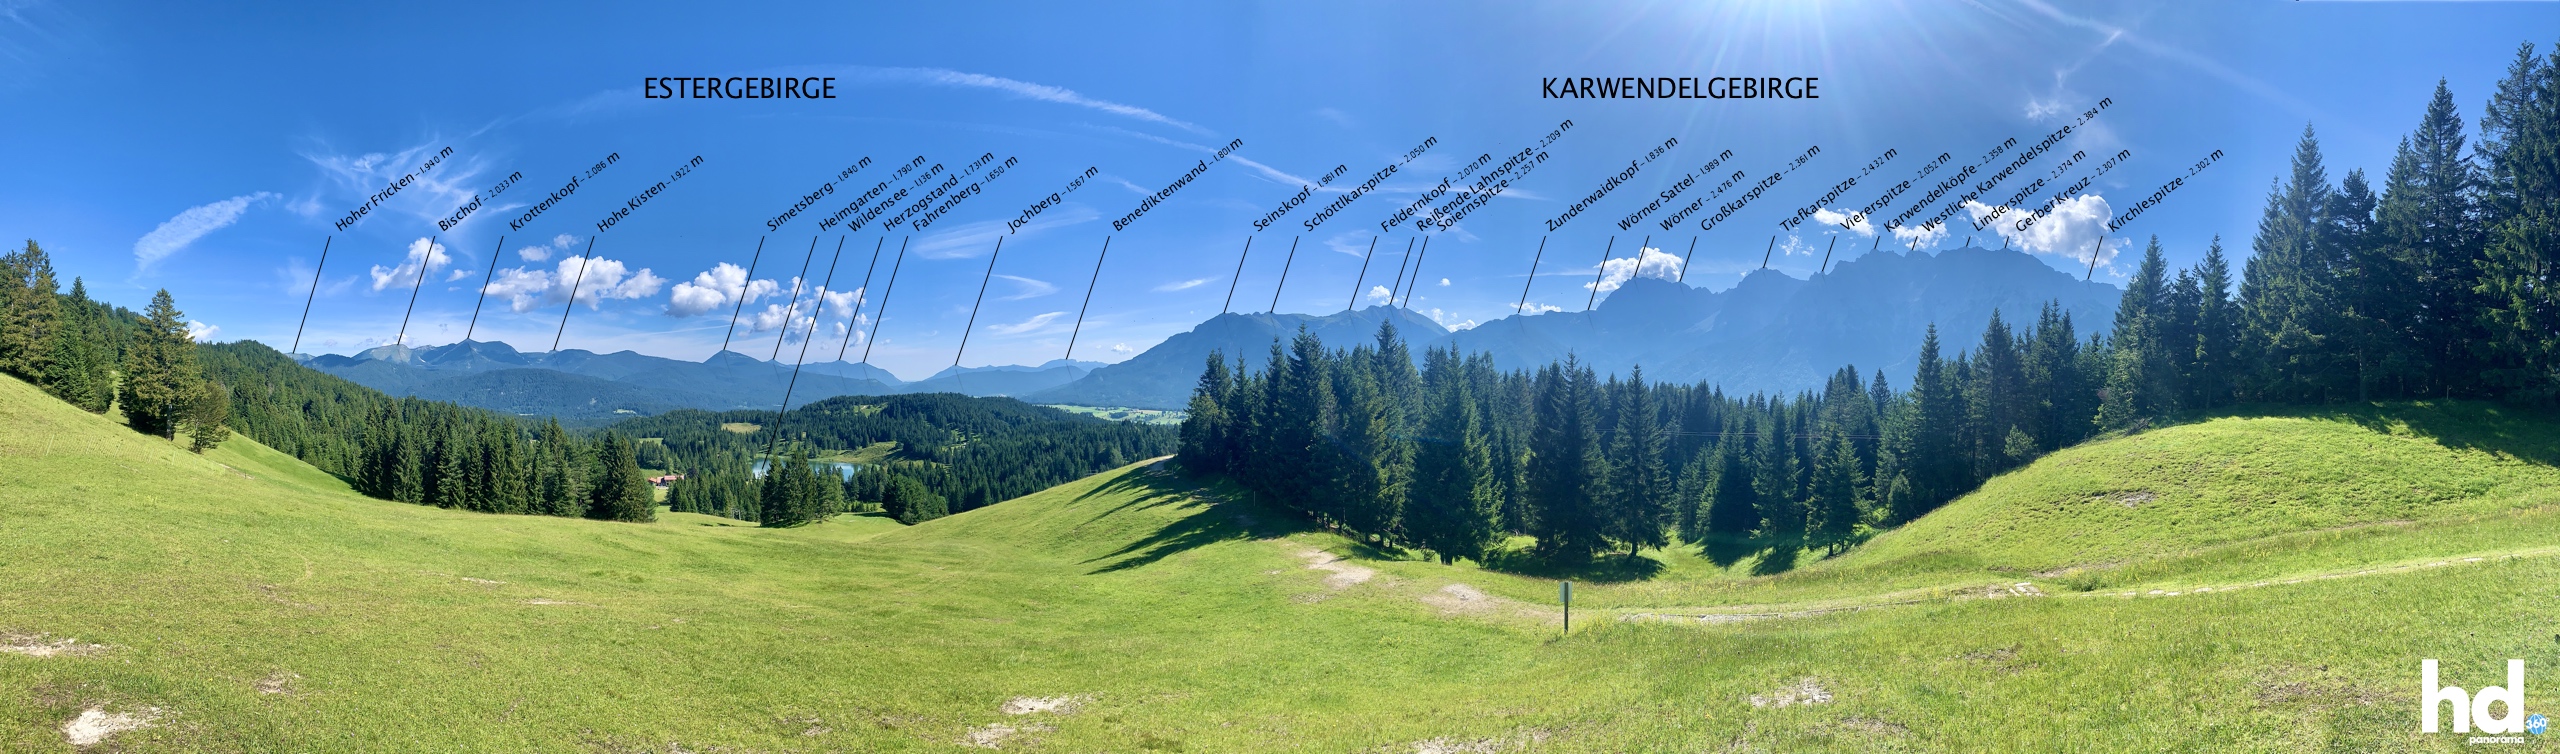 Großer Kranzberg Mittenwald - Blick zum Wildensee, Estergebirge und Karwendelgebirge - Foto © HD-Panorama